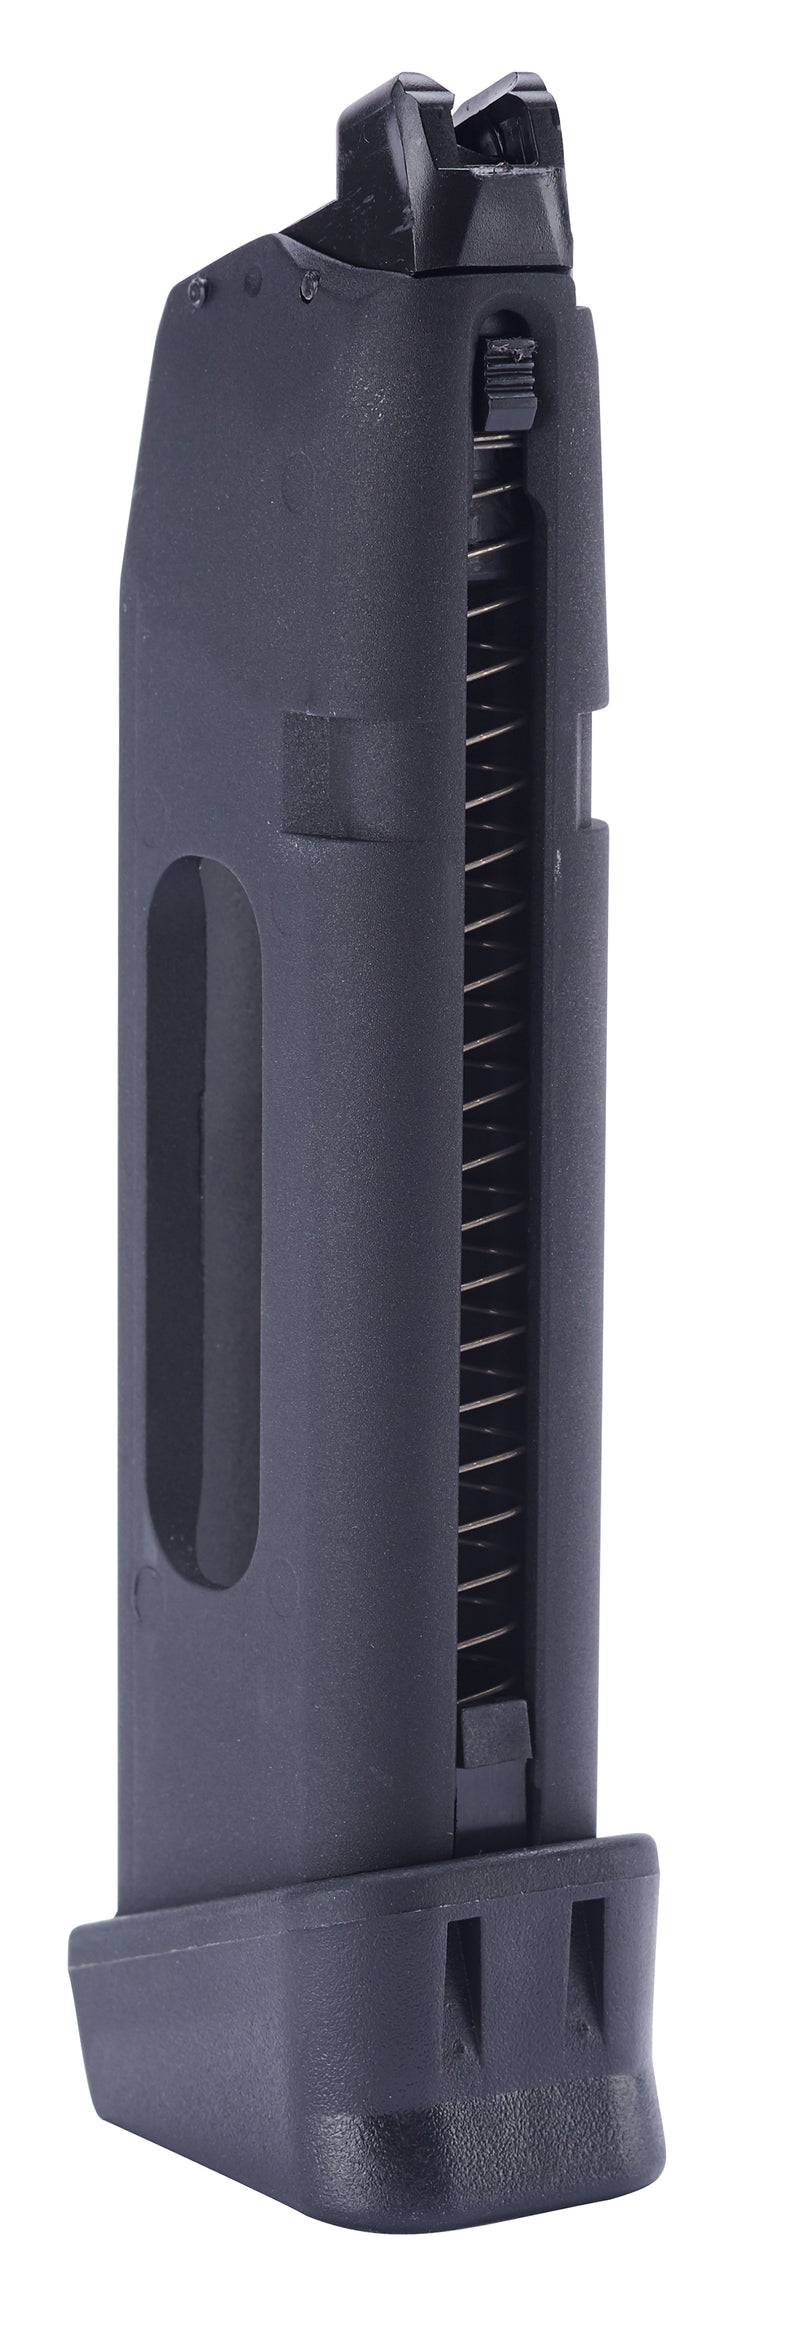 Umarex Glock G17 Gen 4 23 Round Airsoft Pistol CO2 Magazine, Black (2276320)